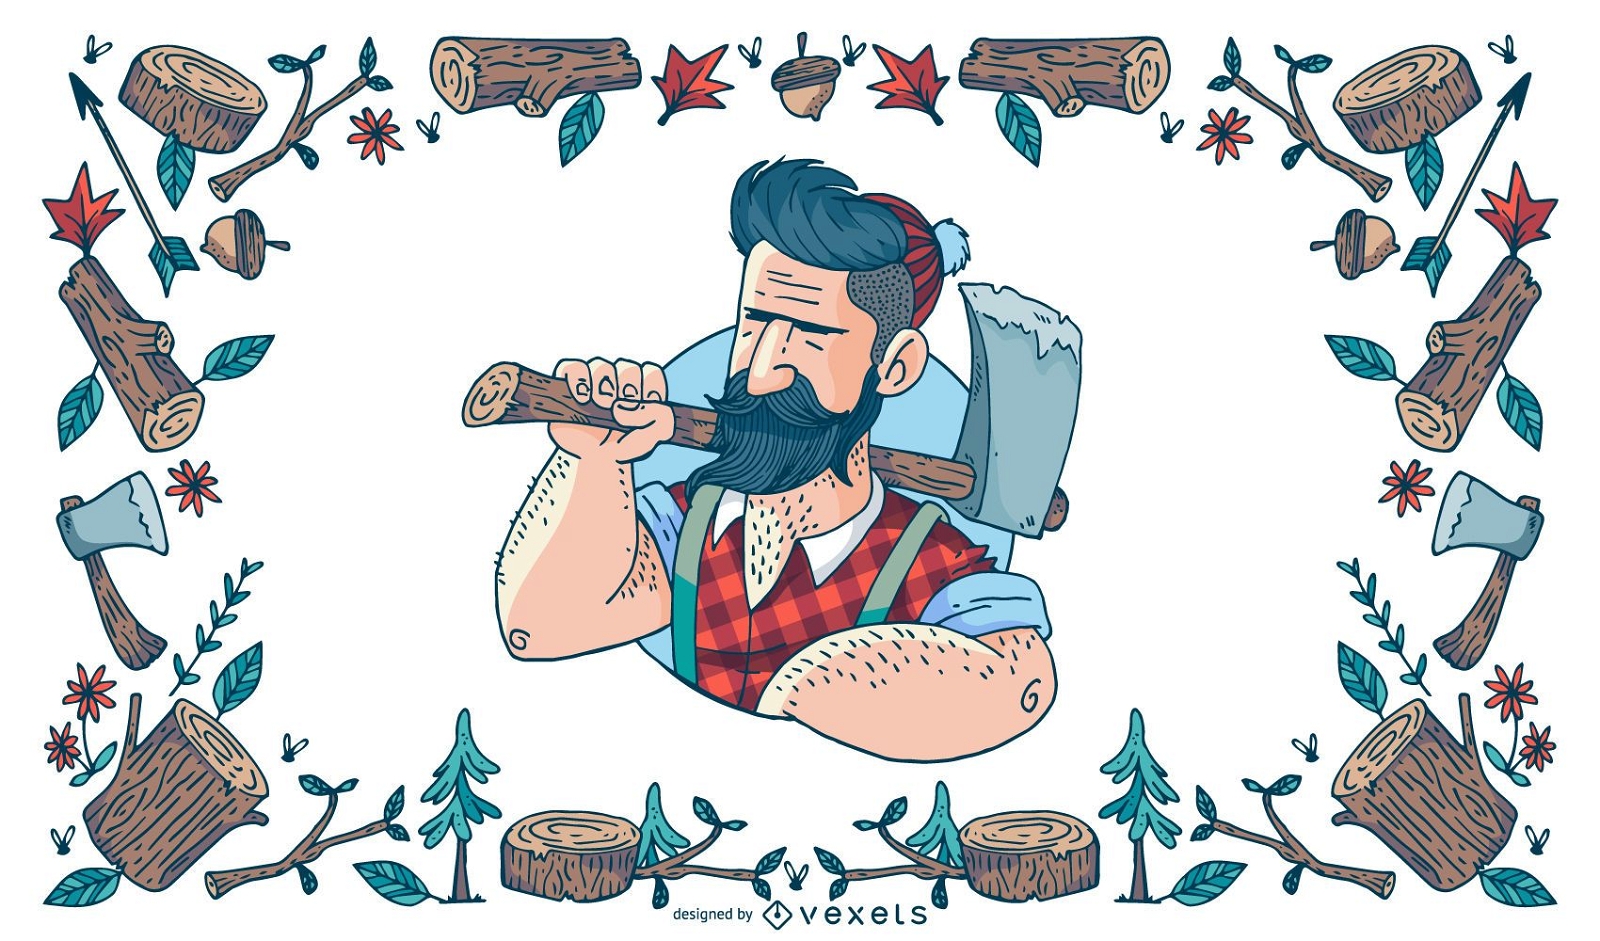 Hipster lumberjack illustration